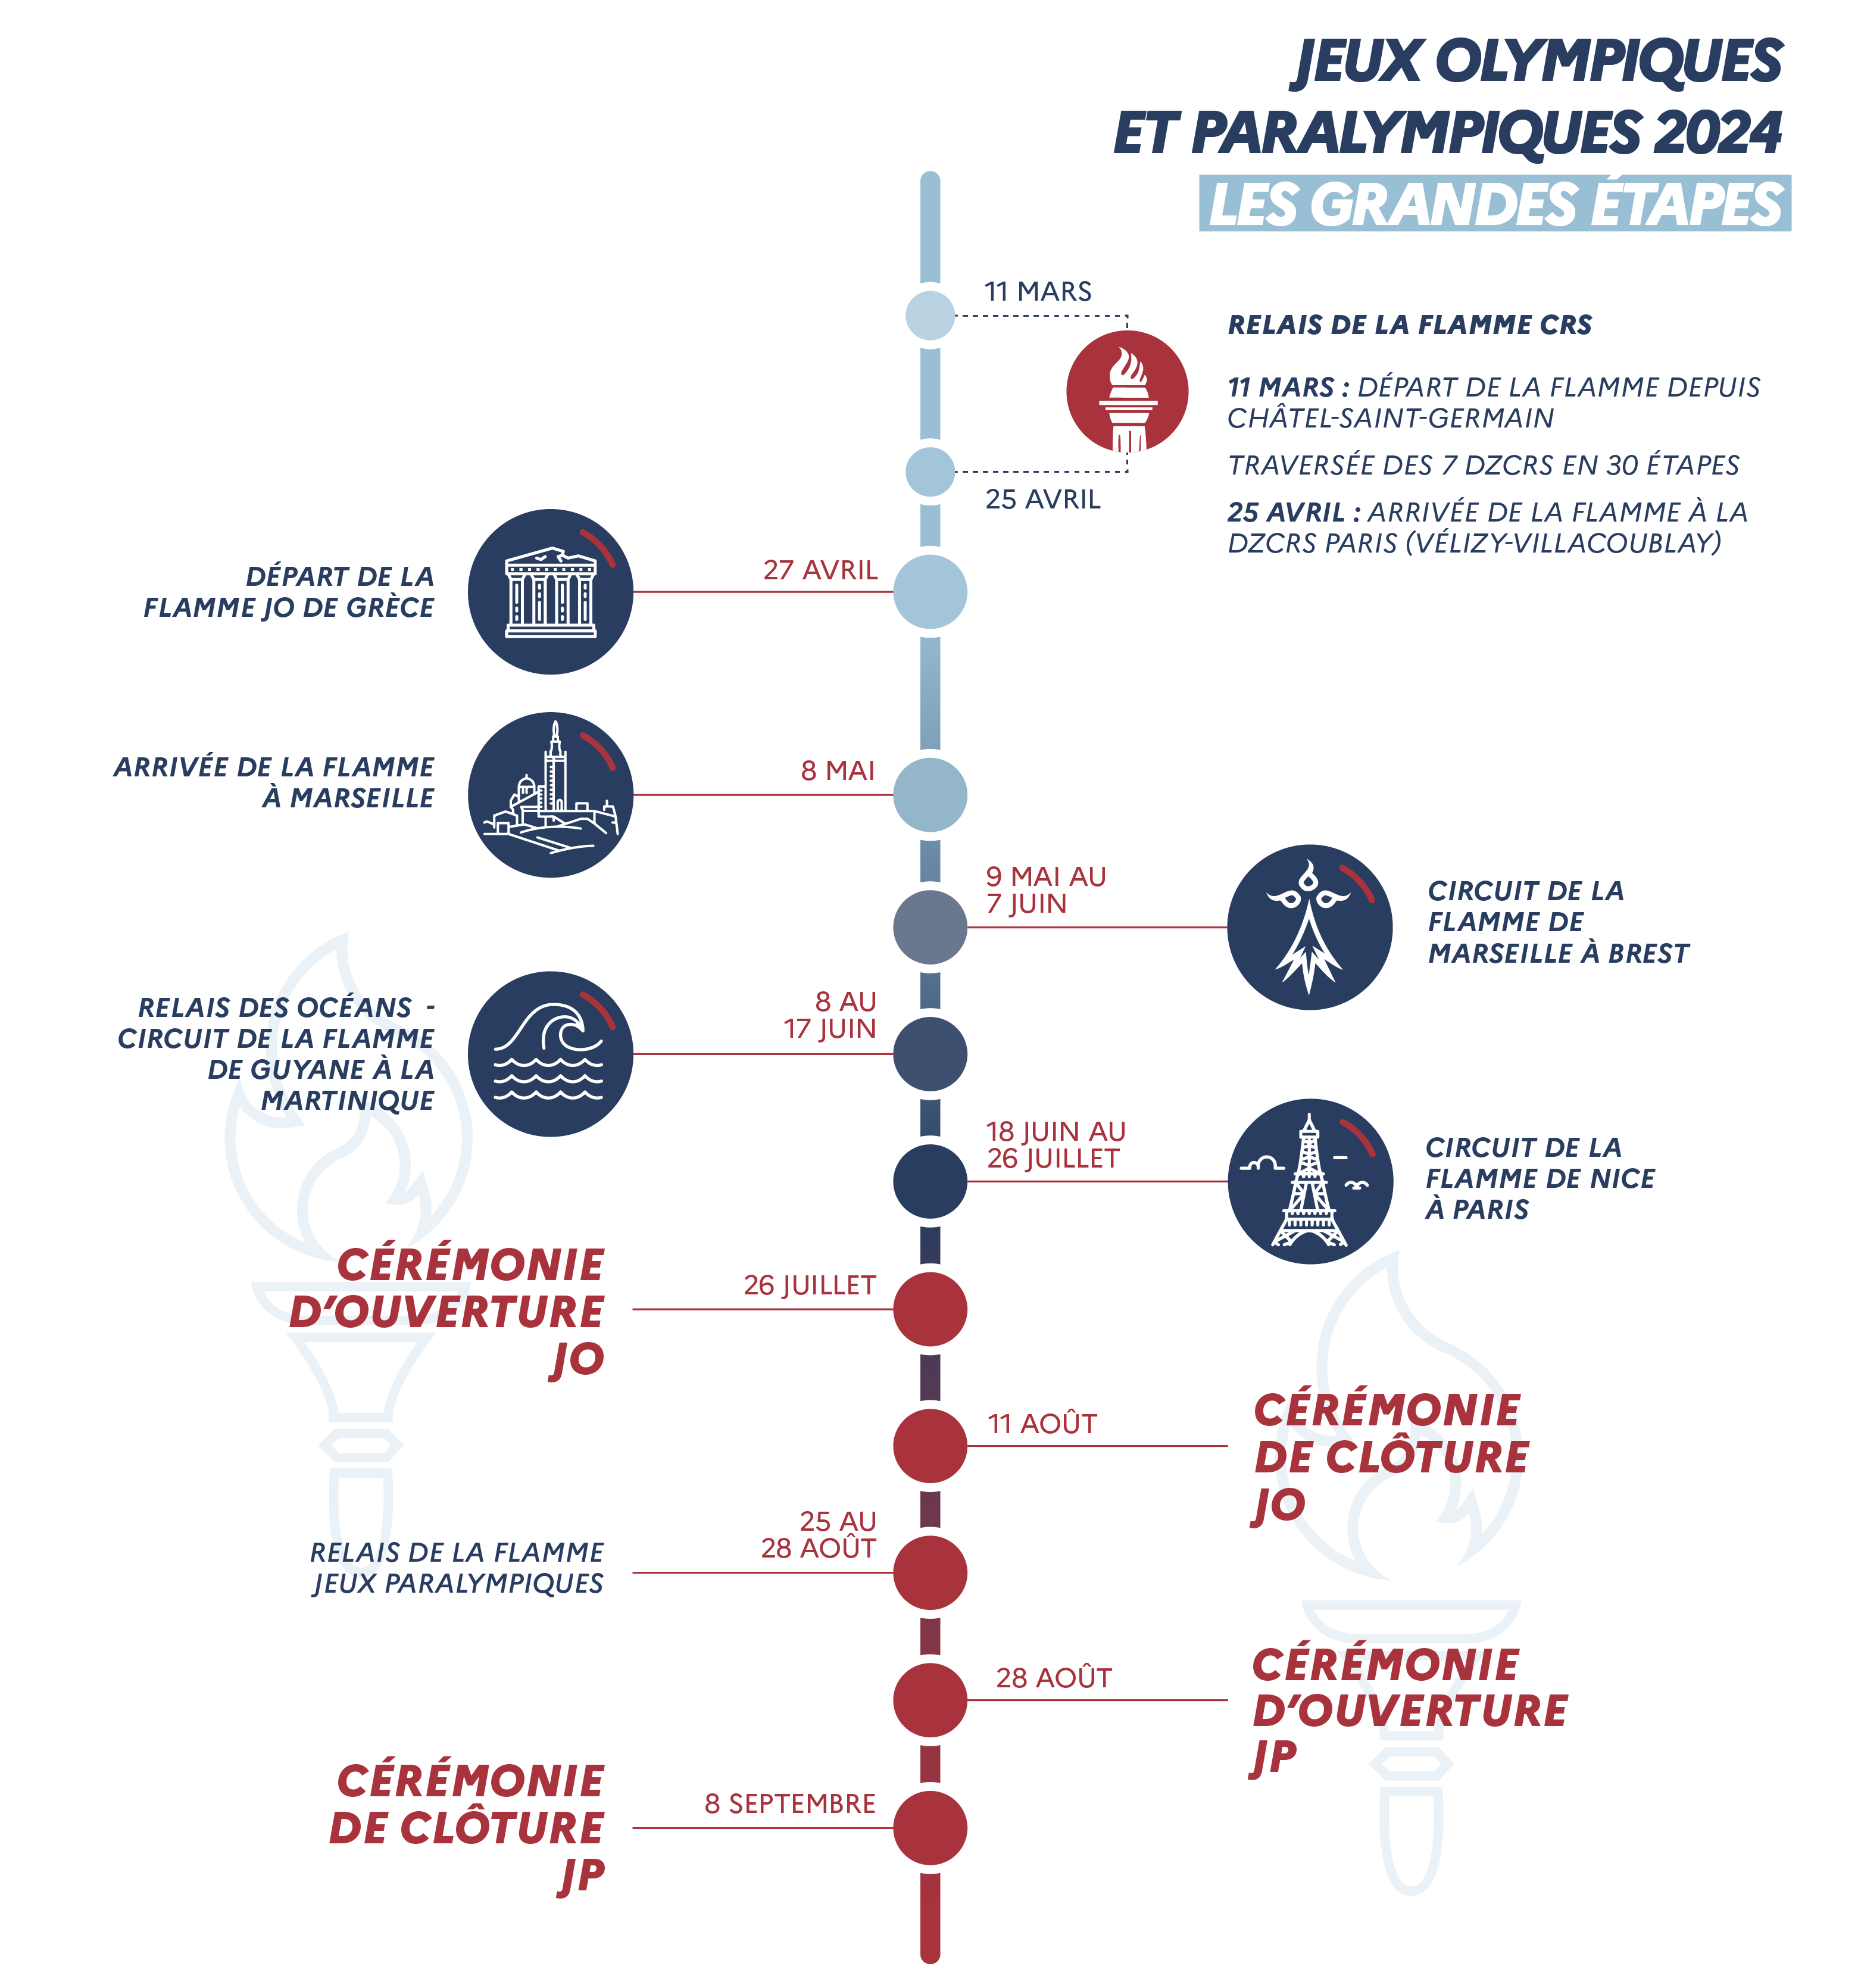 Frise chronologique sur les Jeux olympiques et paralymptiques 2024 - Les grandes étapes